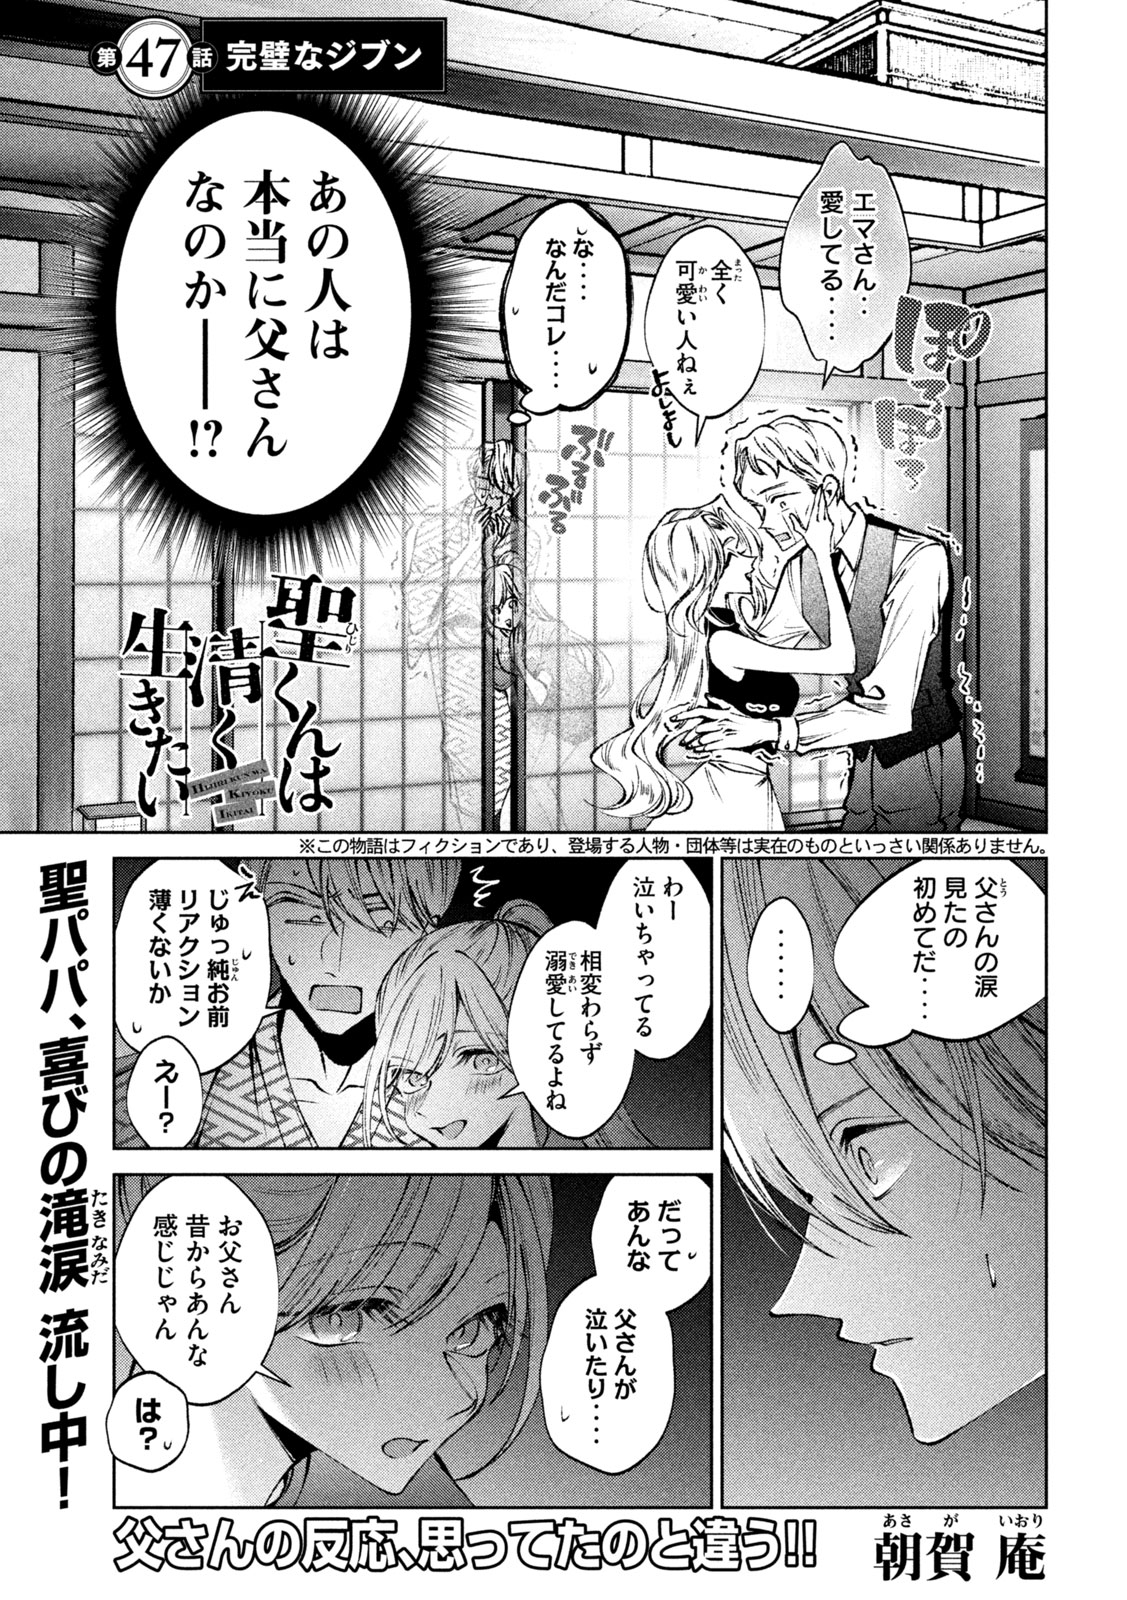 Hijiri-kun wa Kiyoku Ikitai - Chapter 47 - Page 1